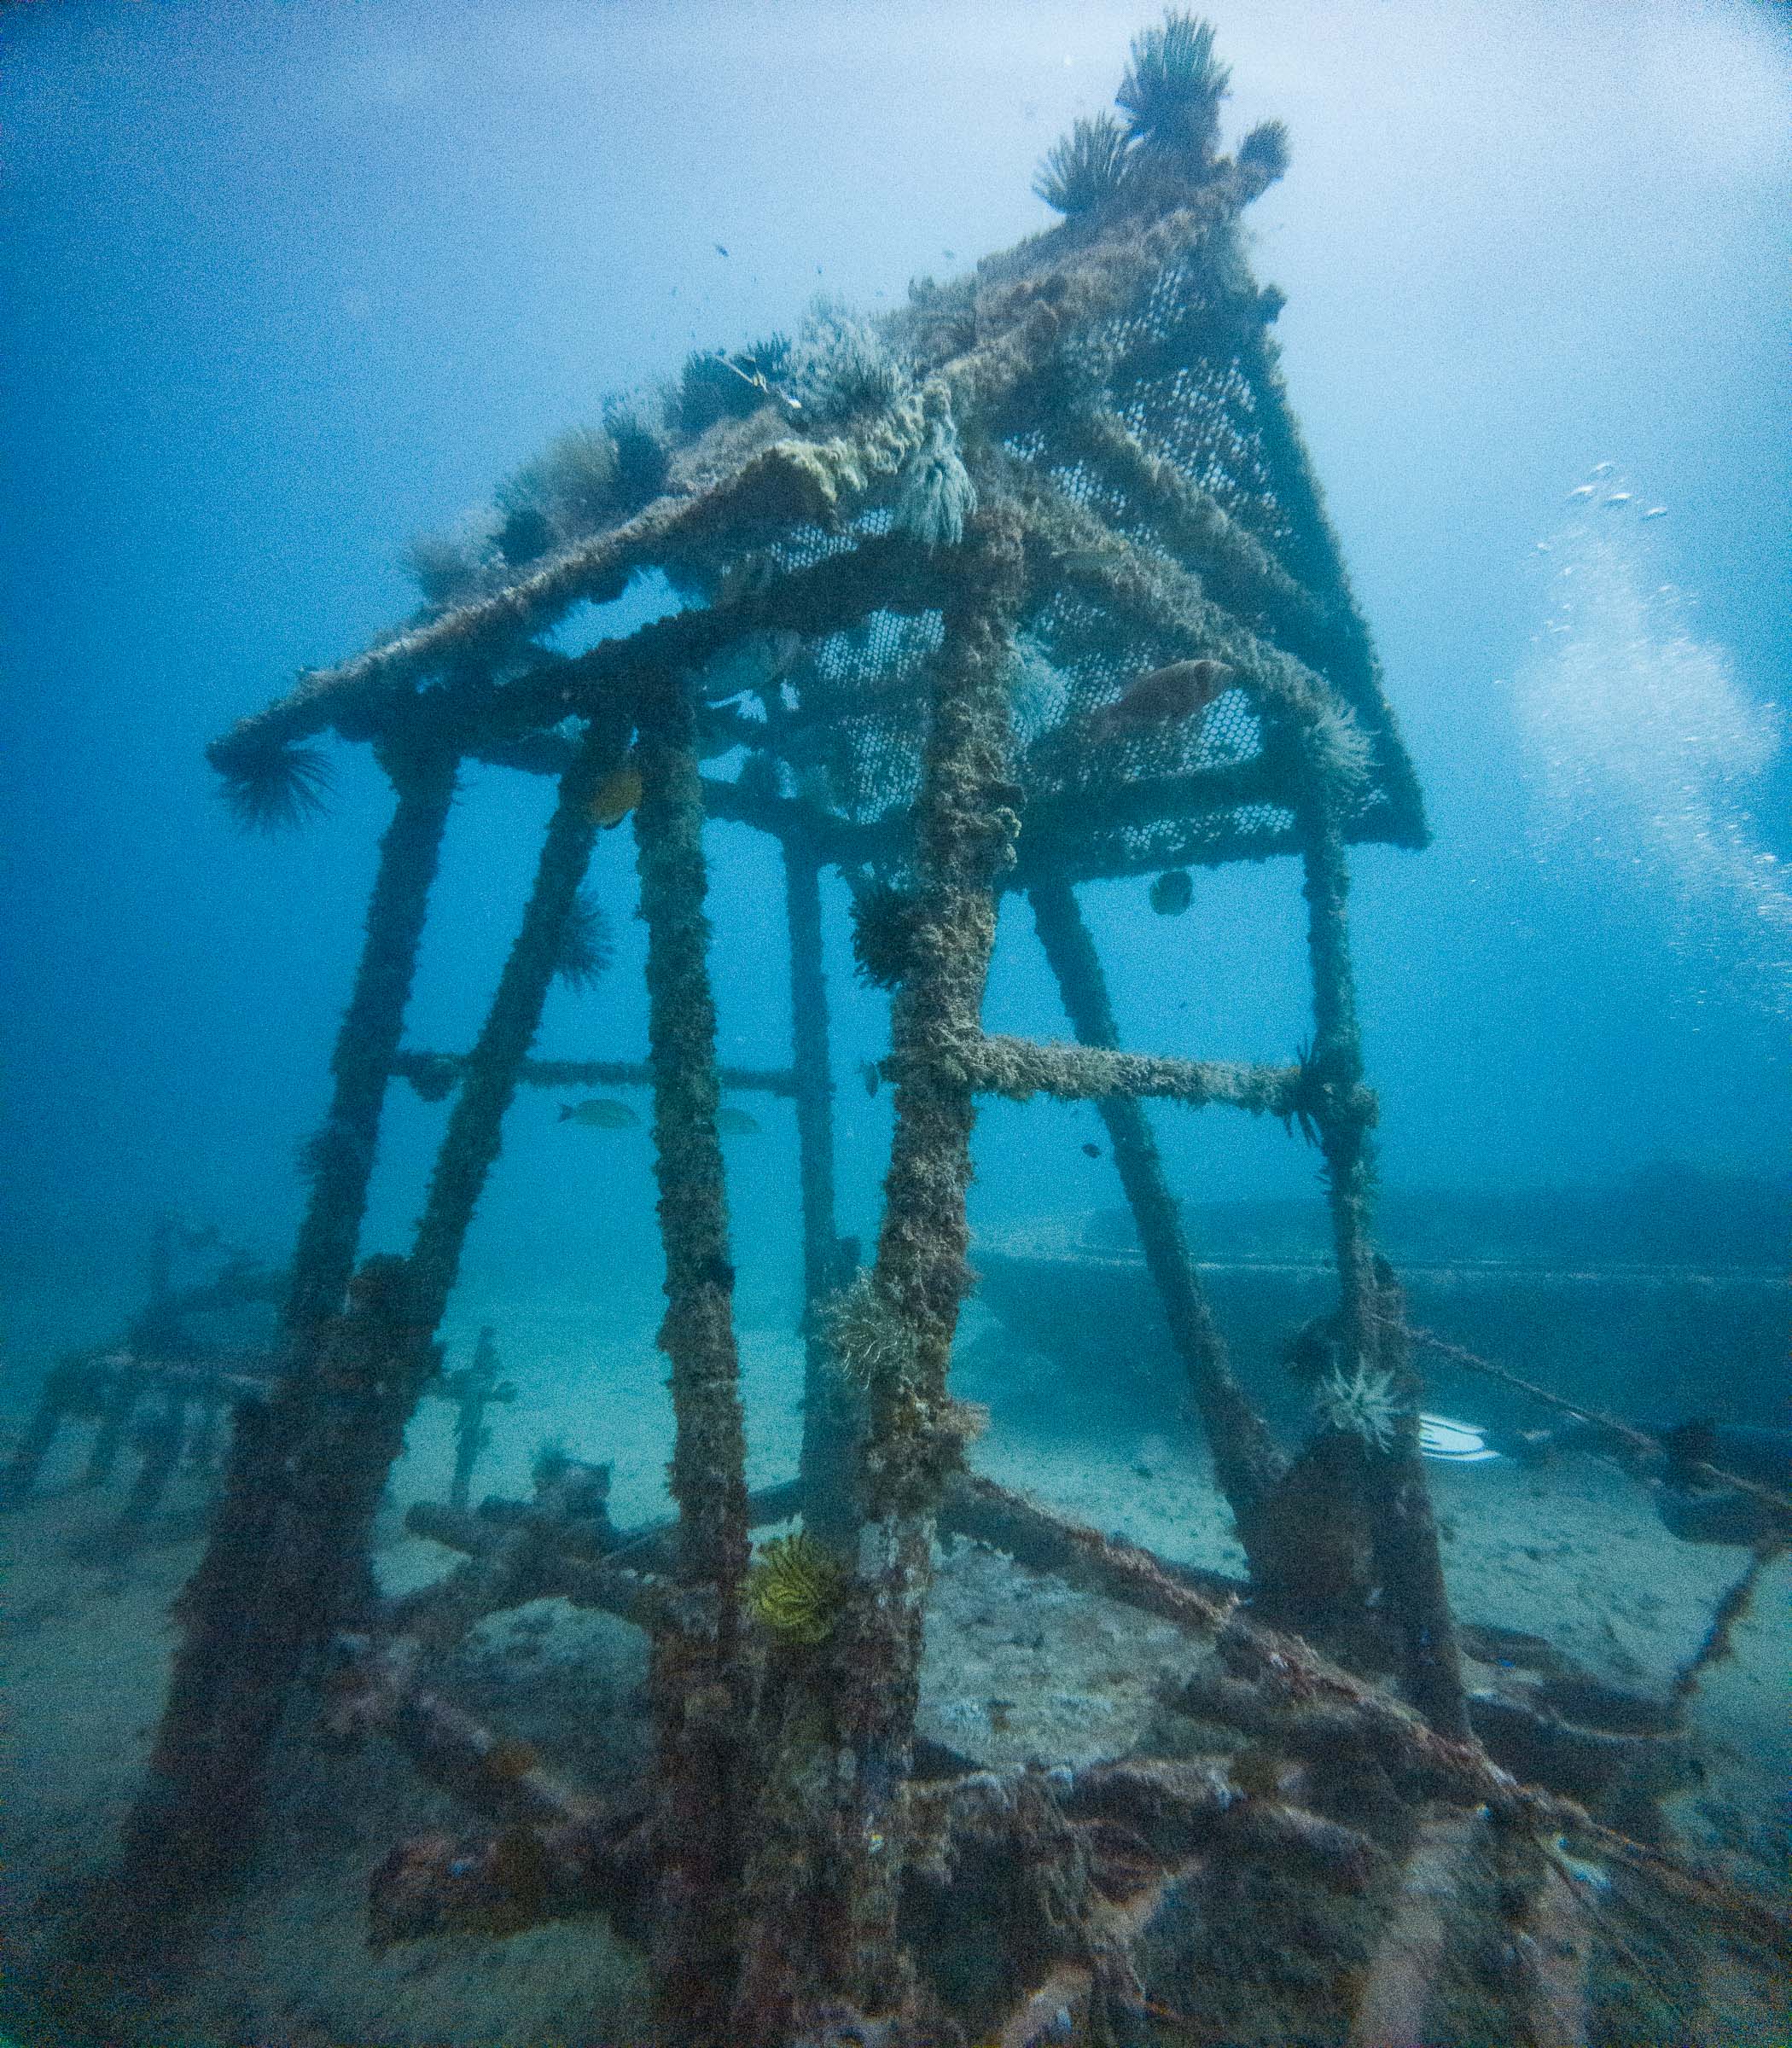 Seaventures Dive Rig House Reef